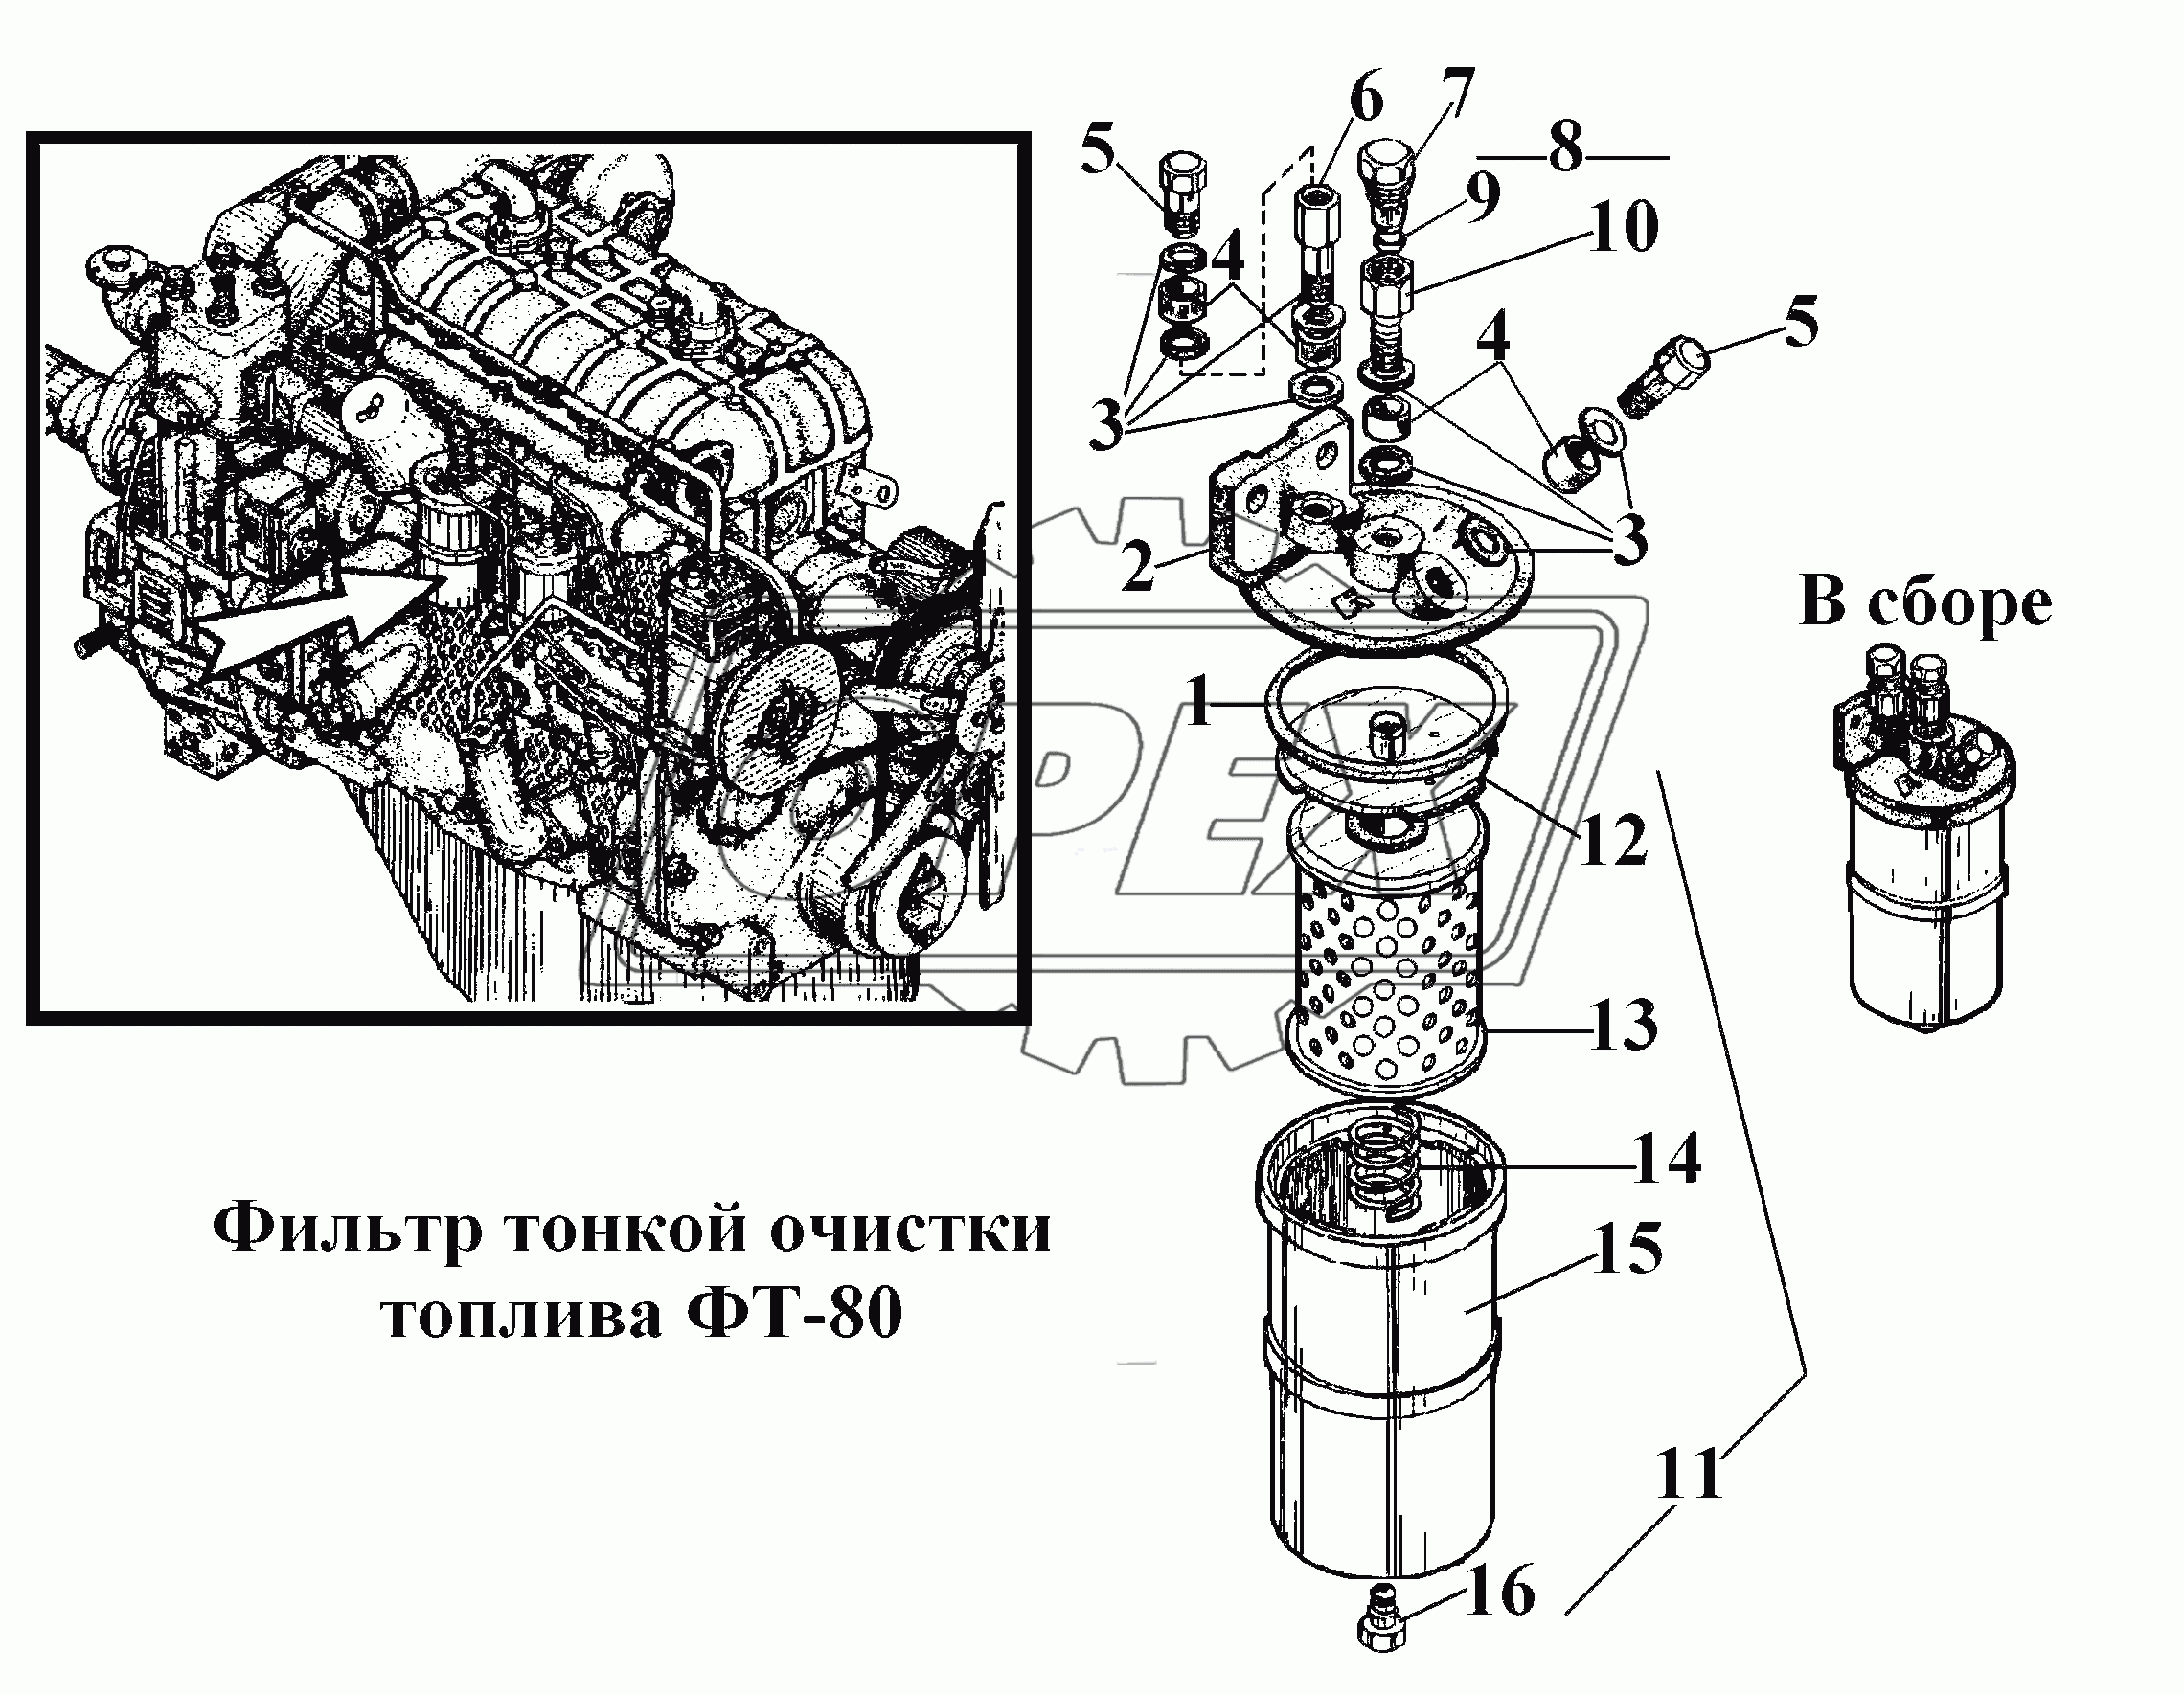 Фильтр тонкой очистки топлива ФТ-80